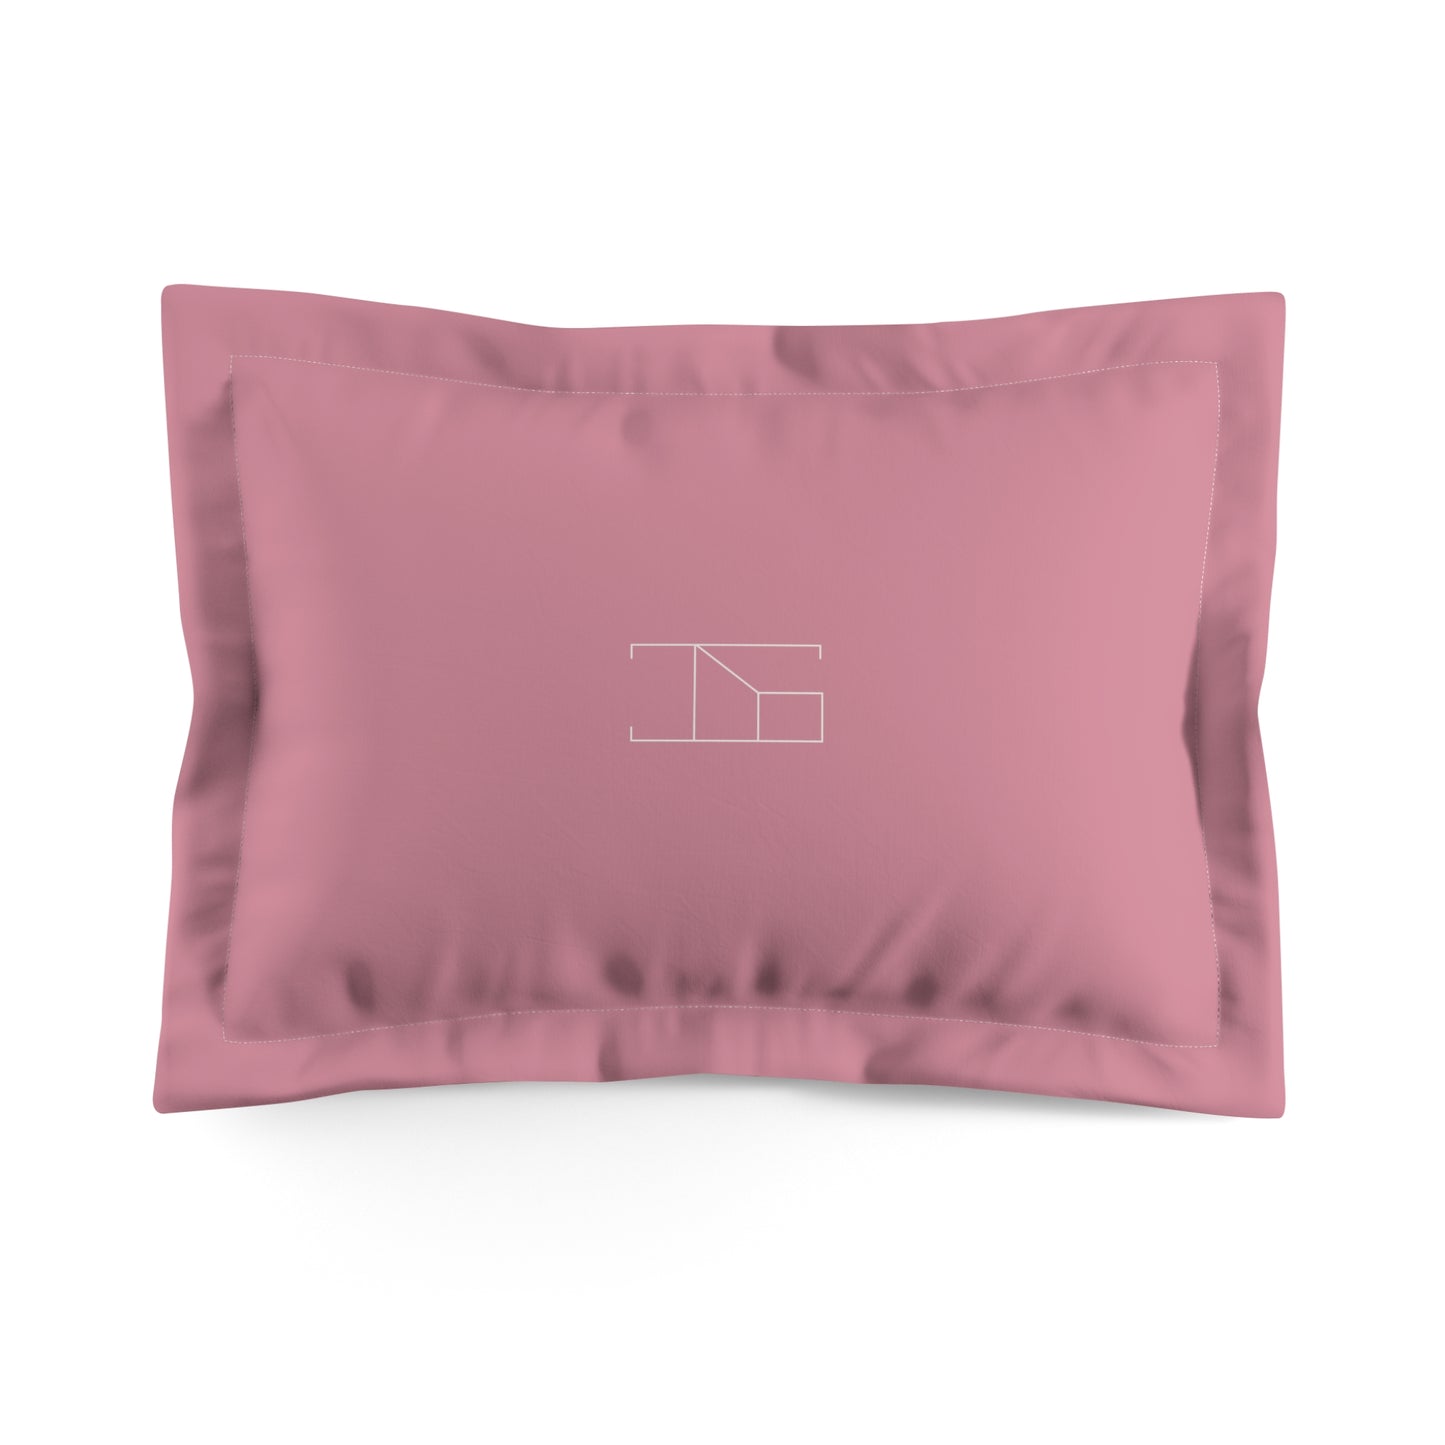 Pillow Sham - Vintage Puce Pink